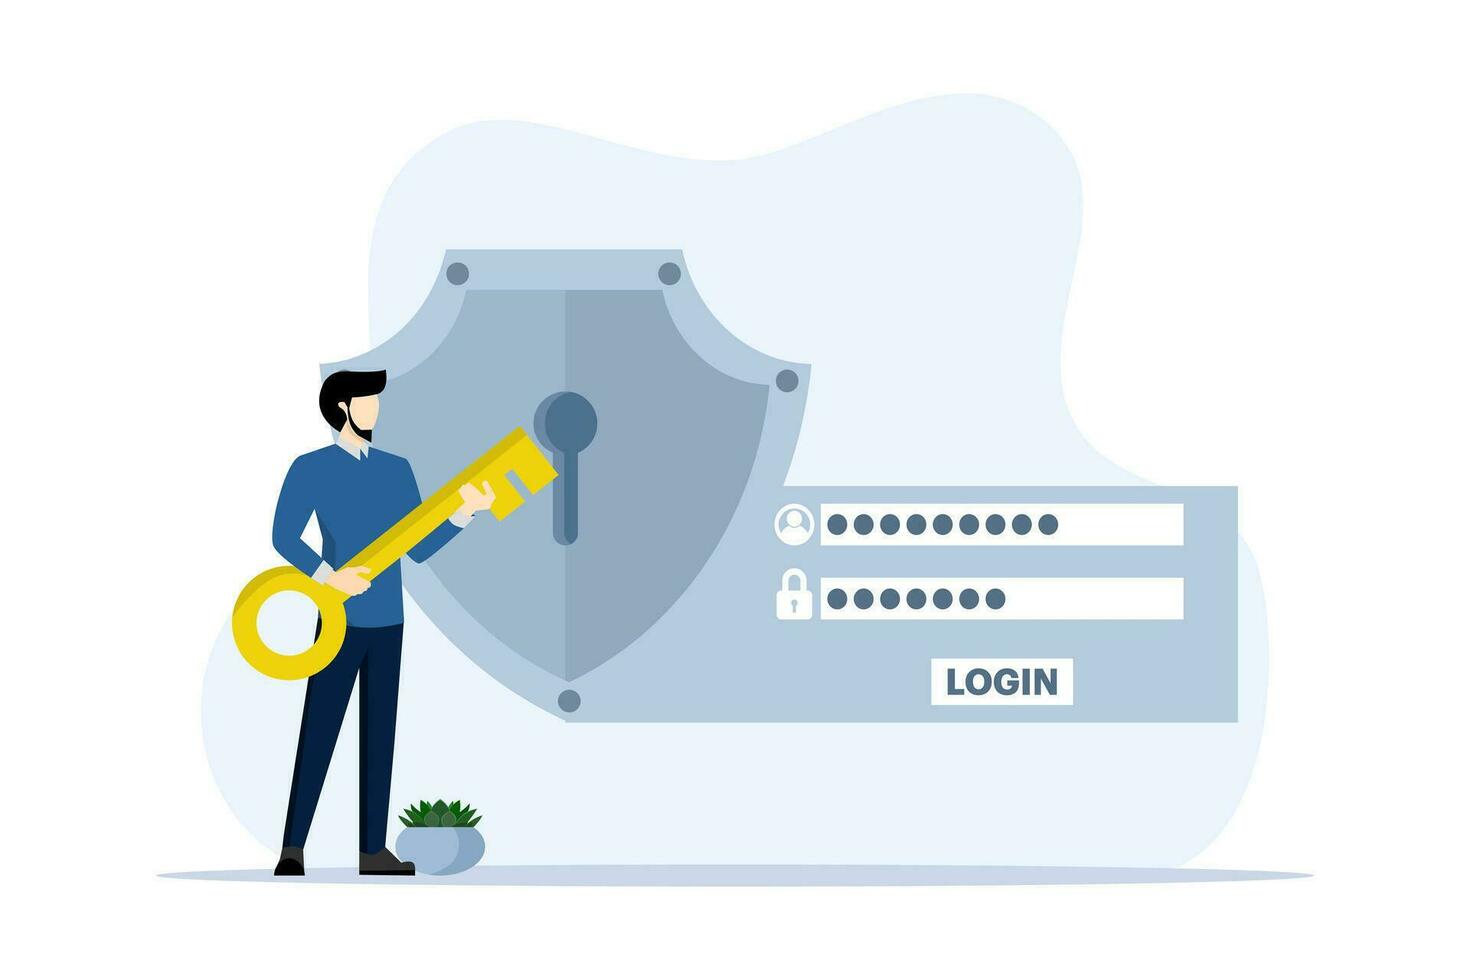 konto säkerhet begrepp, affärsman innehar nyckel till tillgång säkerhet systemet den där skyddar användare konto data och Lösenord för logga in. konto information och Lösenord. platt vektor illustration.